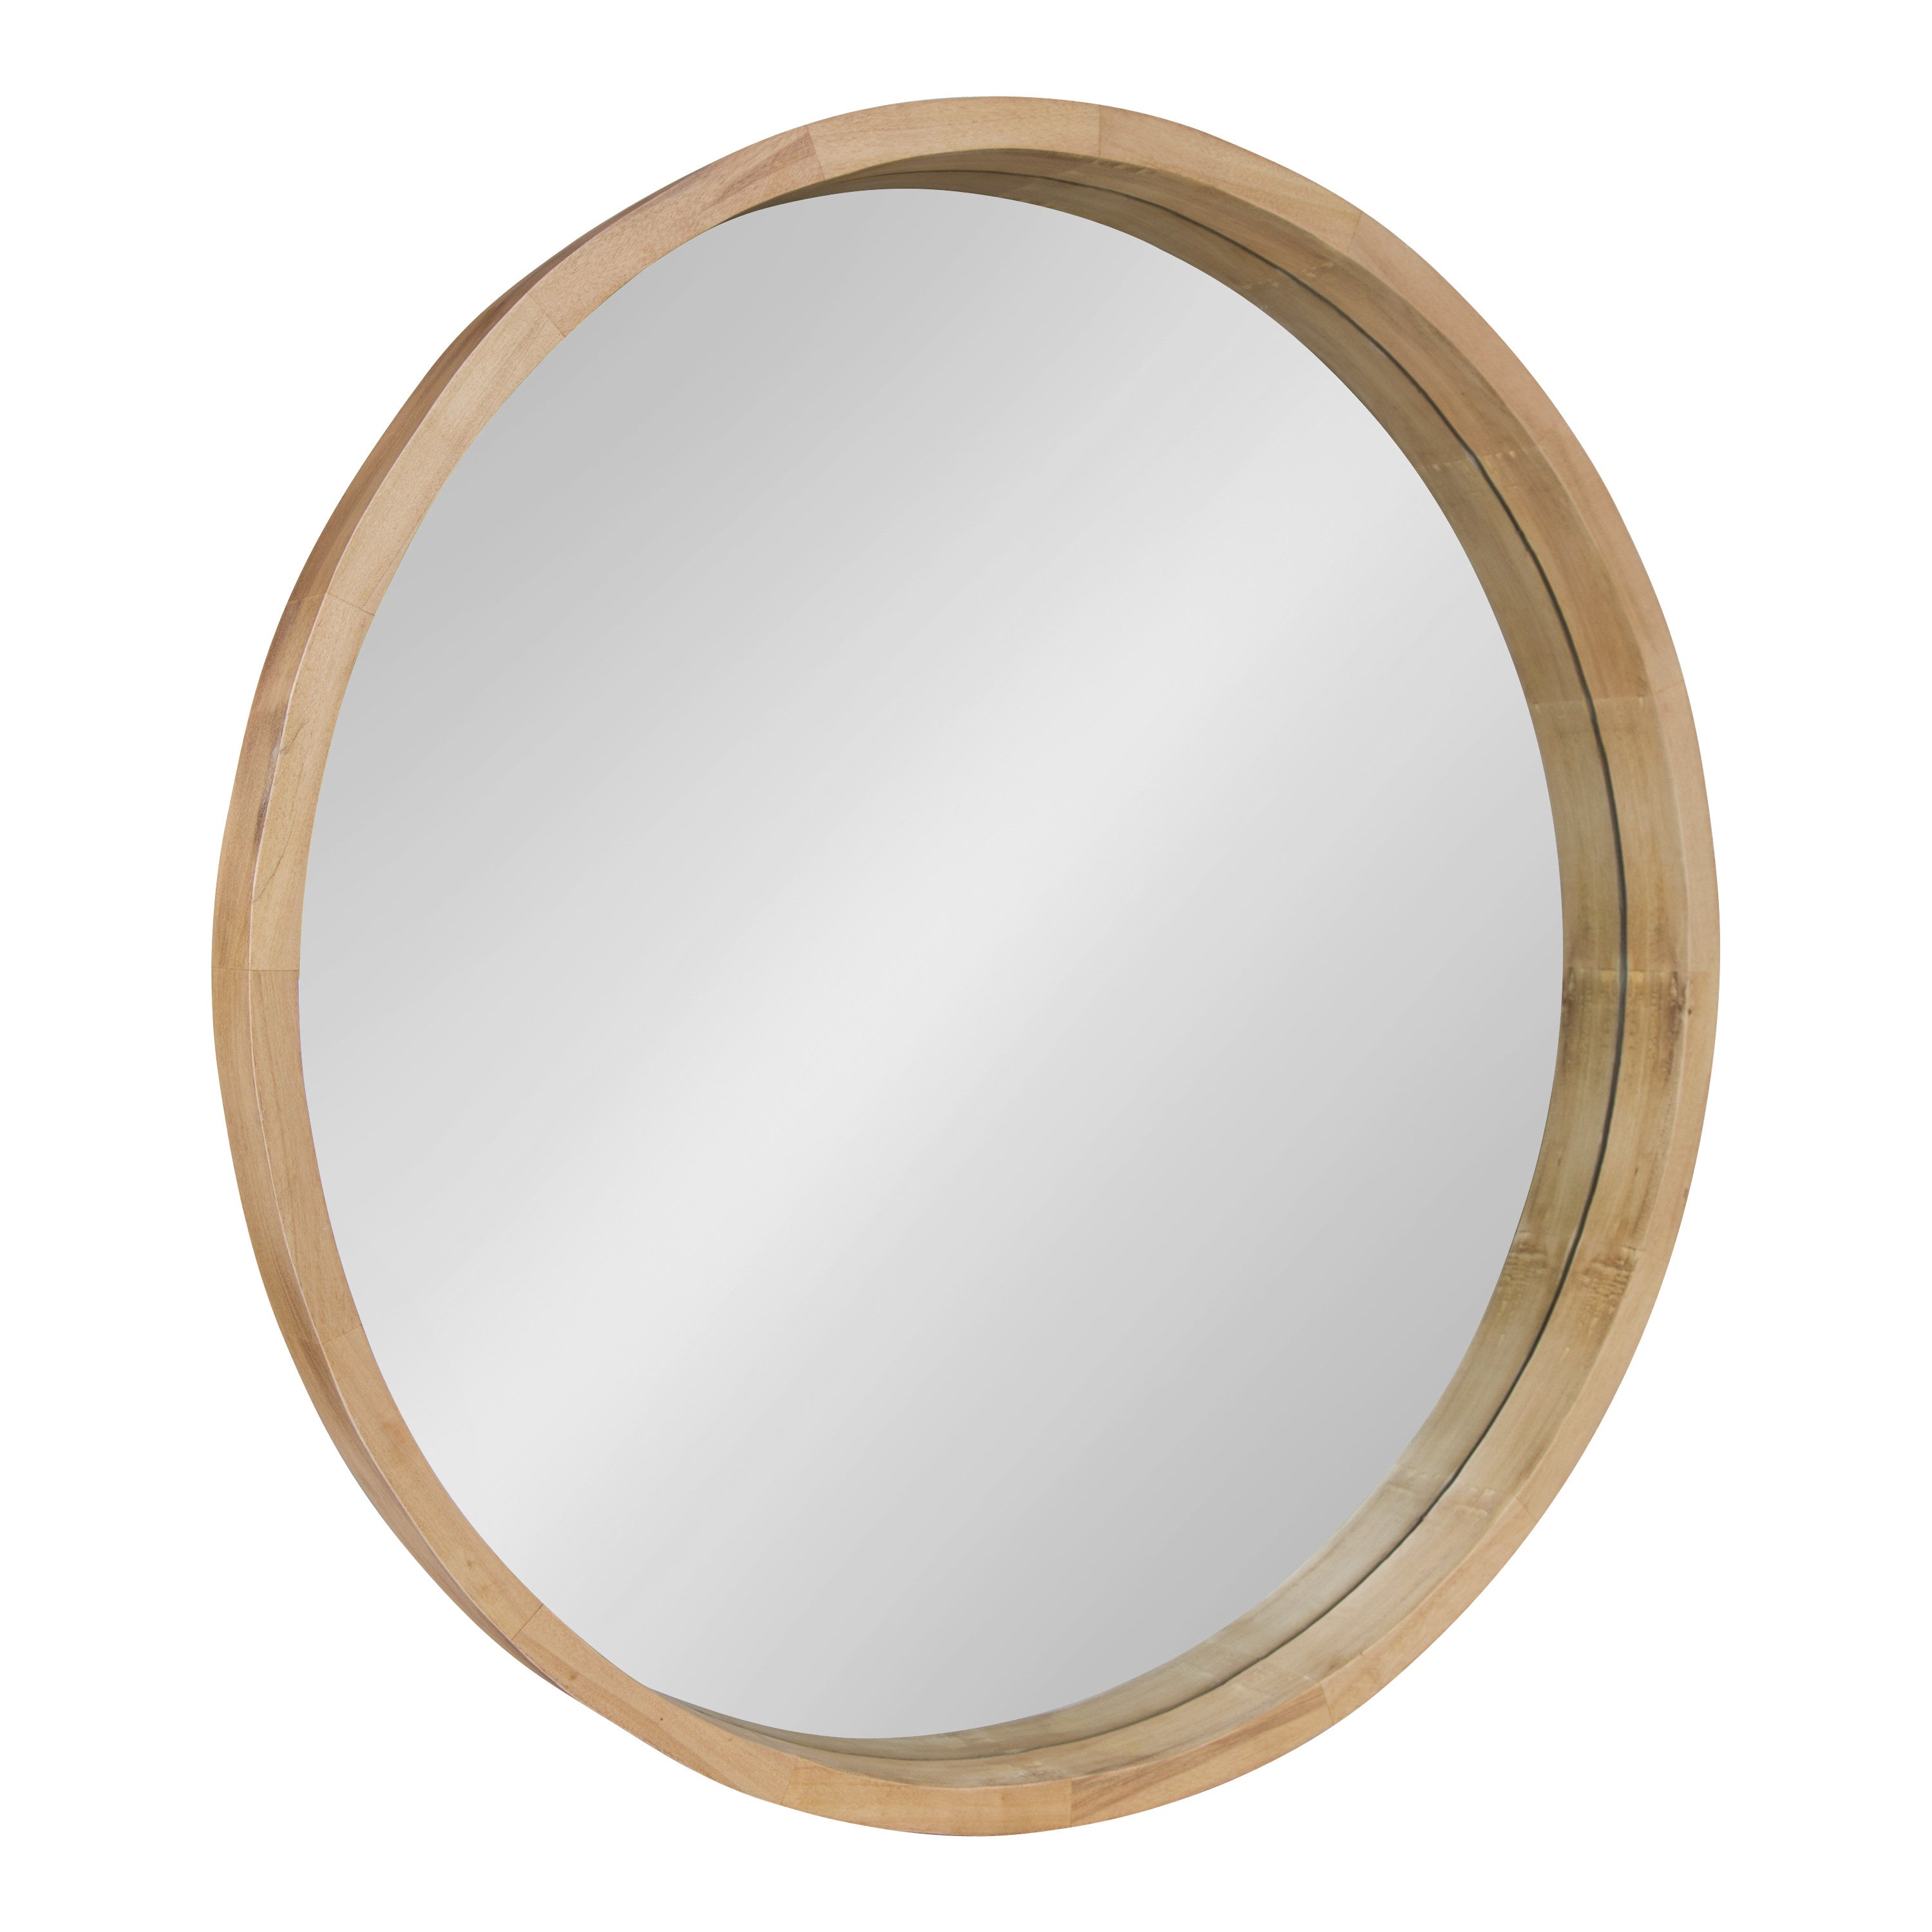 Hutton Round Wood Wall Mirror